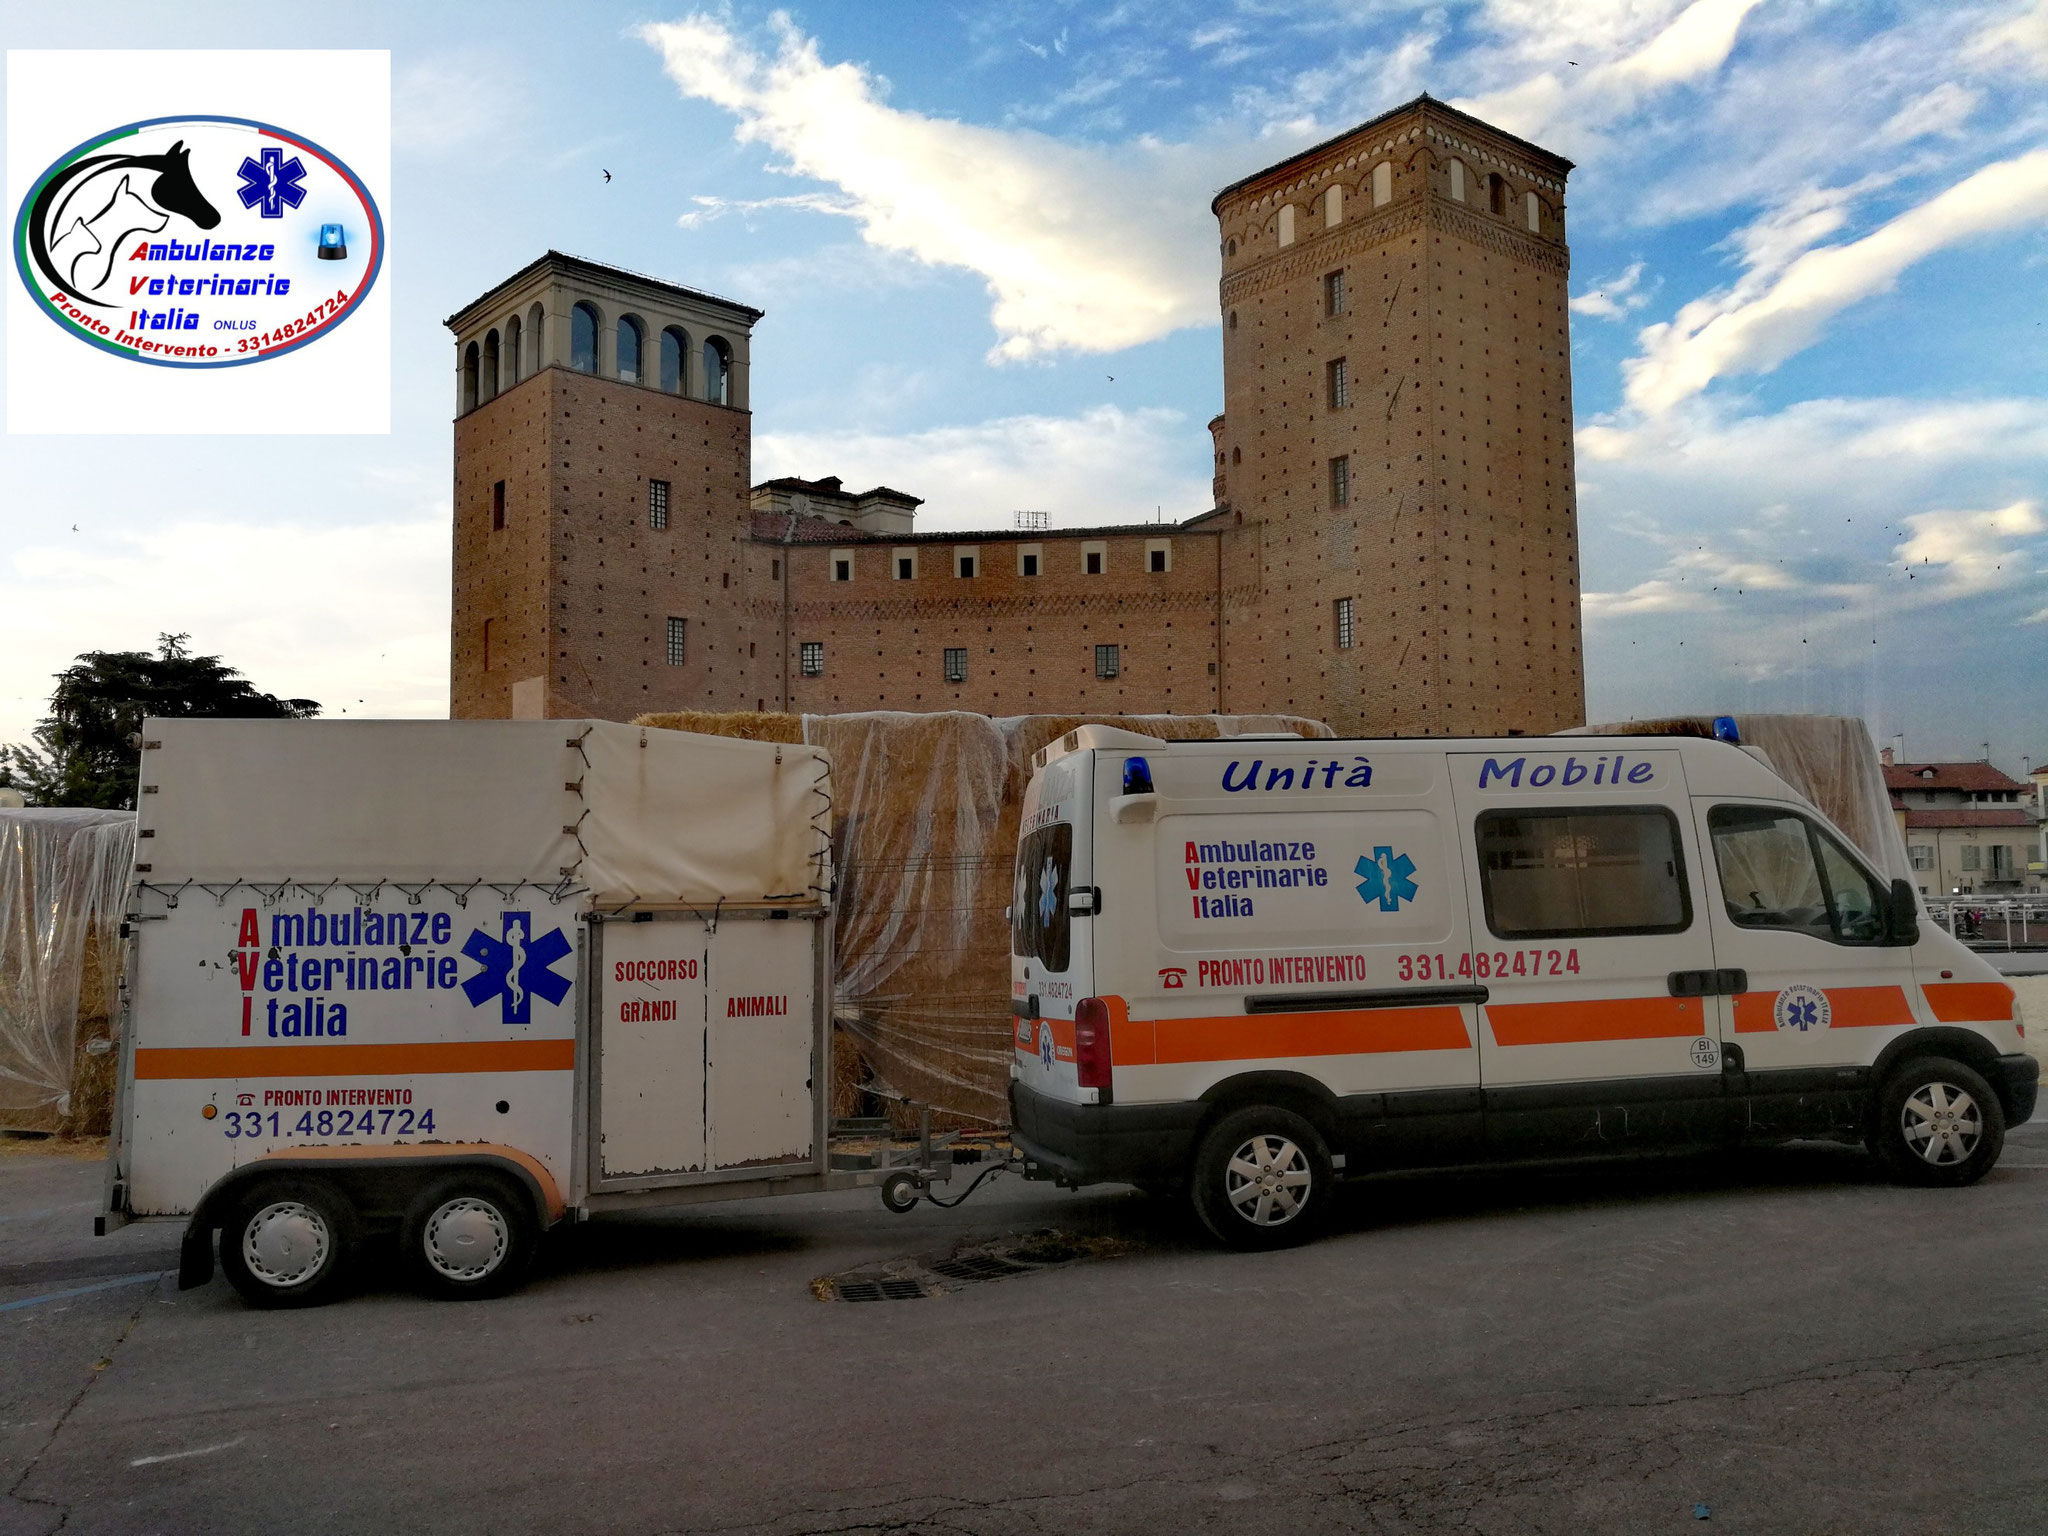 Ambulanza veterinaria, il nuovo progetto del gruppo “A tutta Zampa” al quartiere Cristo